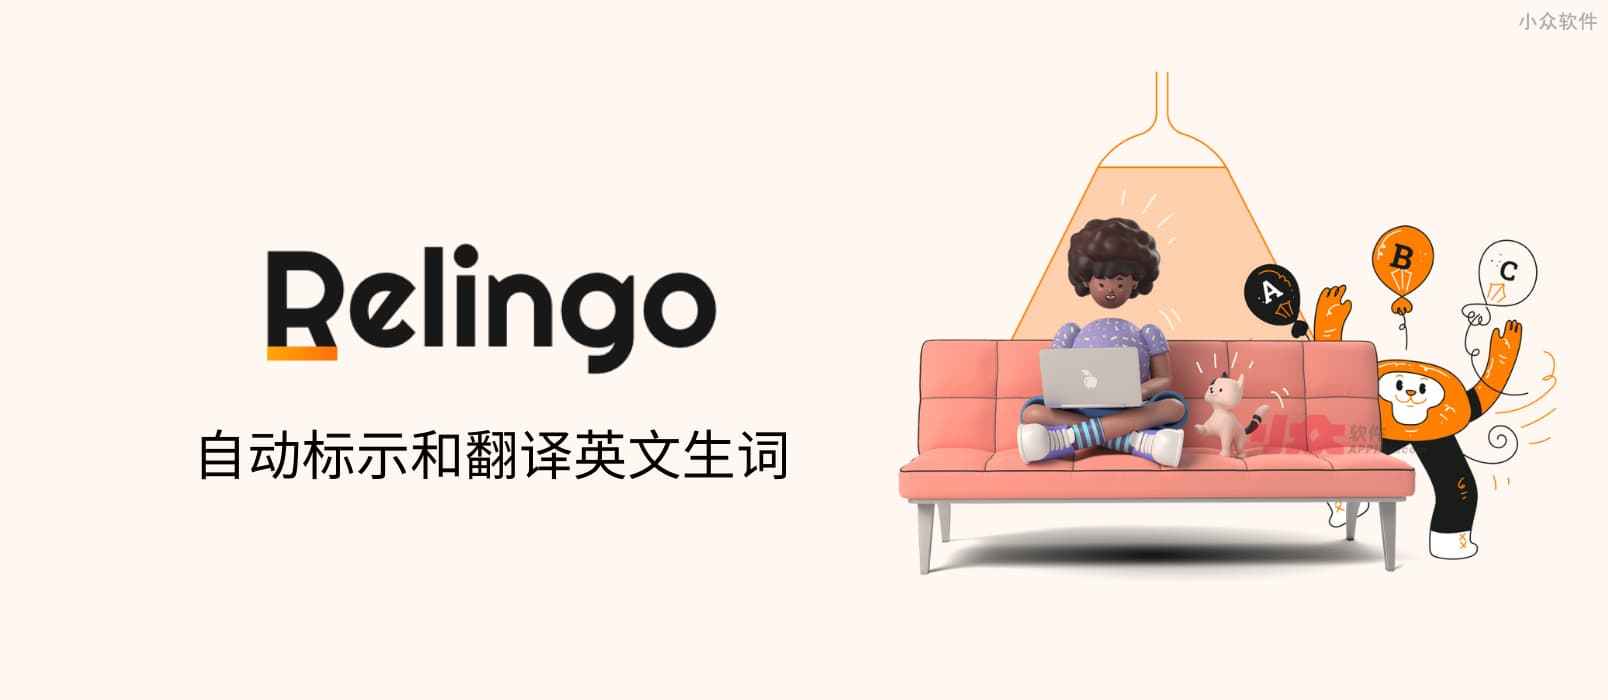 Relingo - 自动为文章与视频标示英文生词[Chrome]